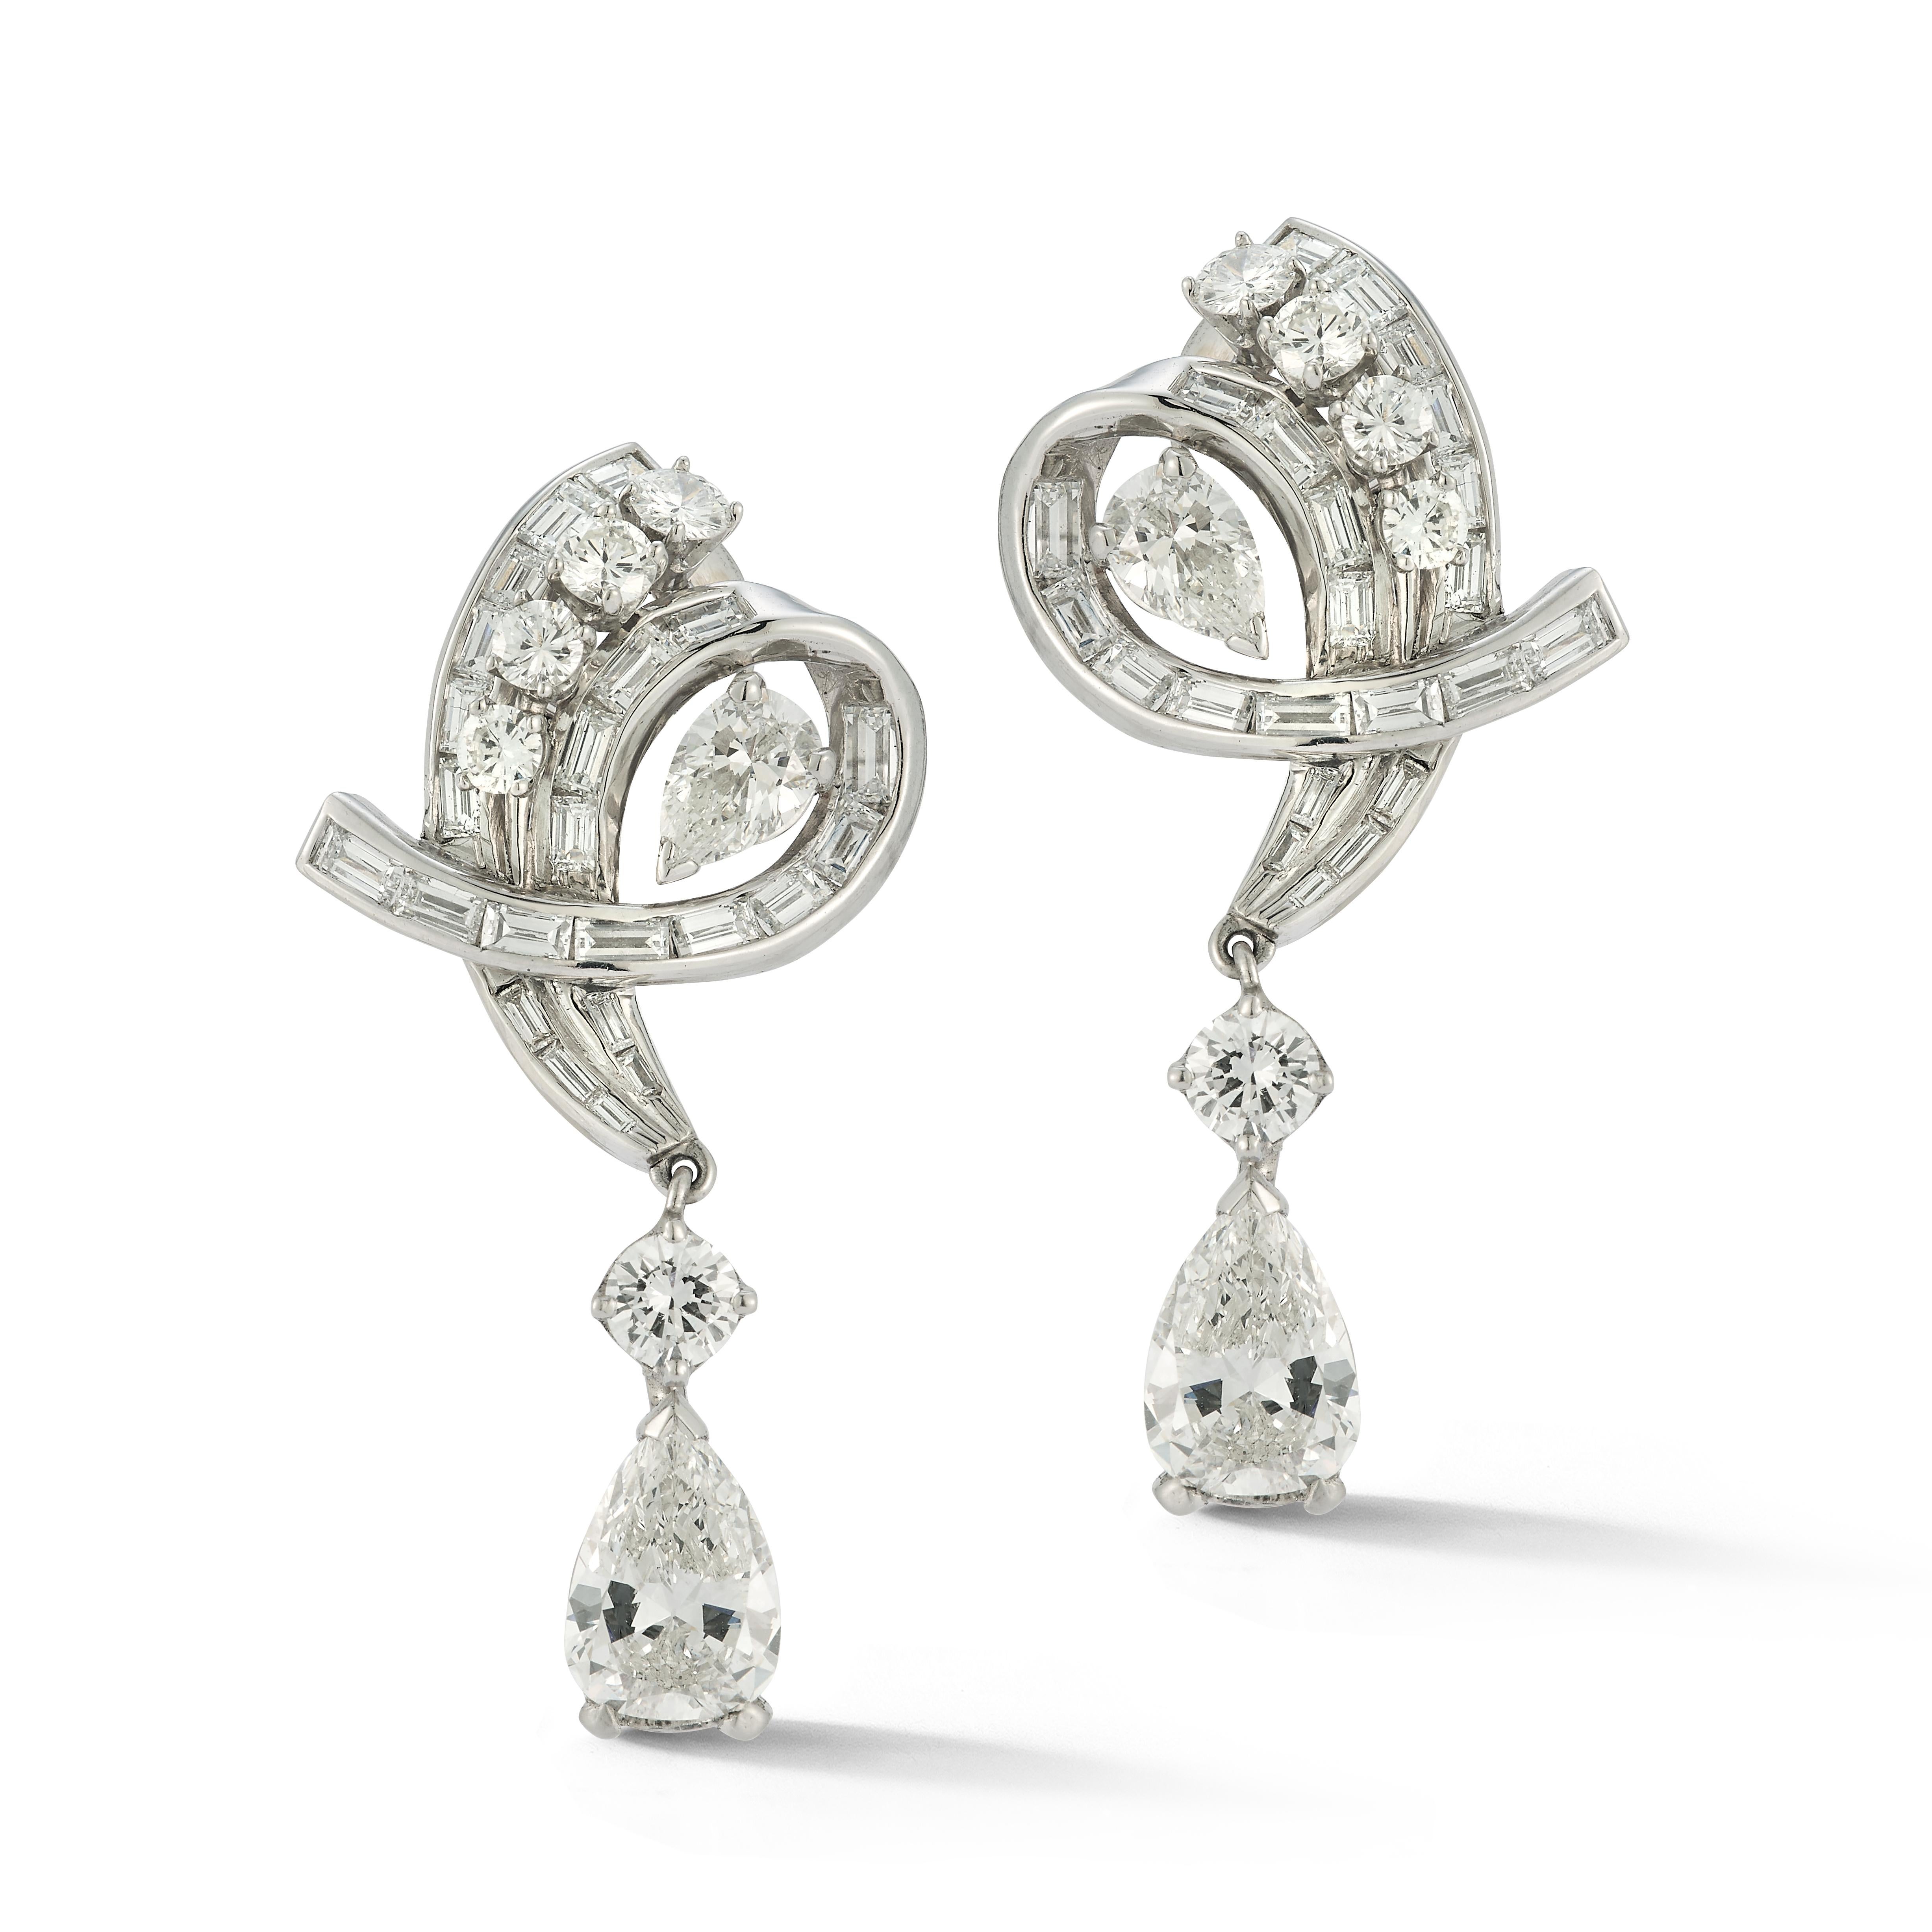 Vintage zertifizierte birnenförmige Diamant-Ohrringe

Ein Paar Ohrringe aus Weißgold, besetzt mit 46 Diamanten im Baguetteschliff, 10 Diamanten im Rundschliff und 4 birnenförmigen Diamanten. 

Begleitet von 2 GIA-Berichten für die 2 birnenförmigen